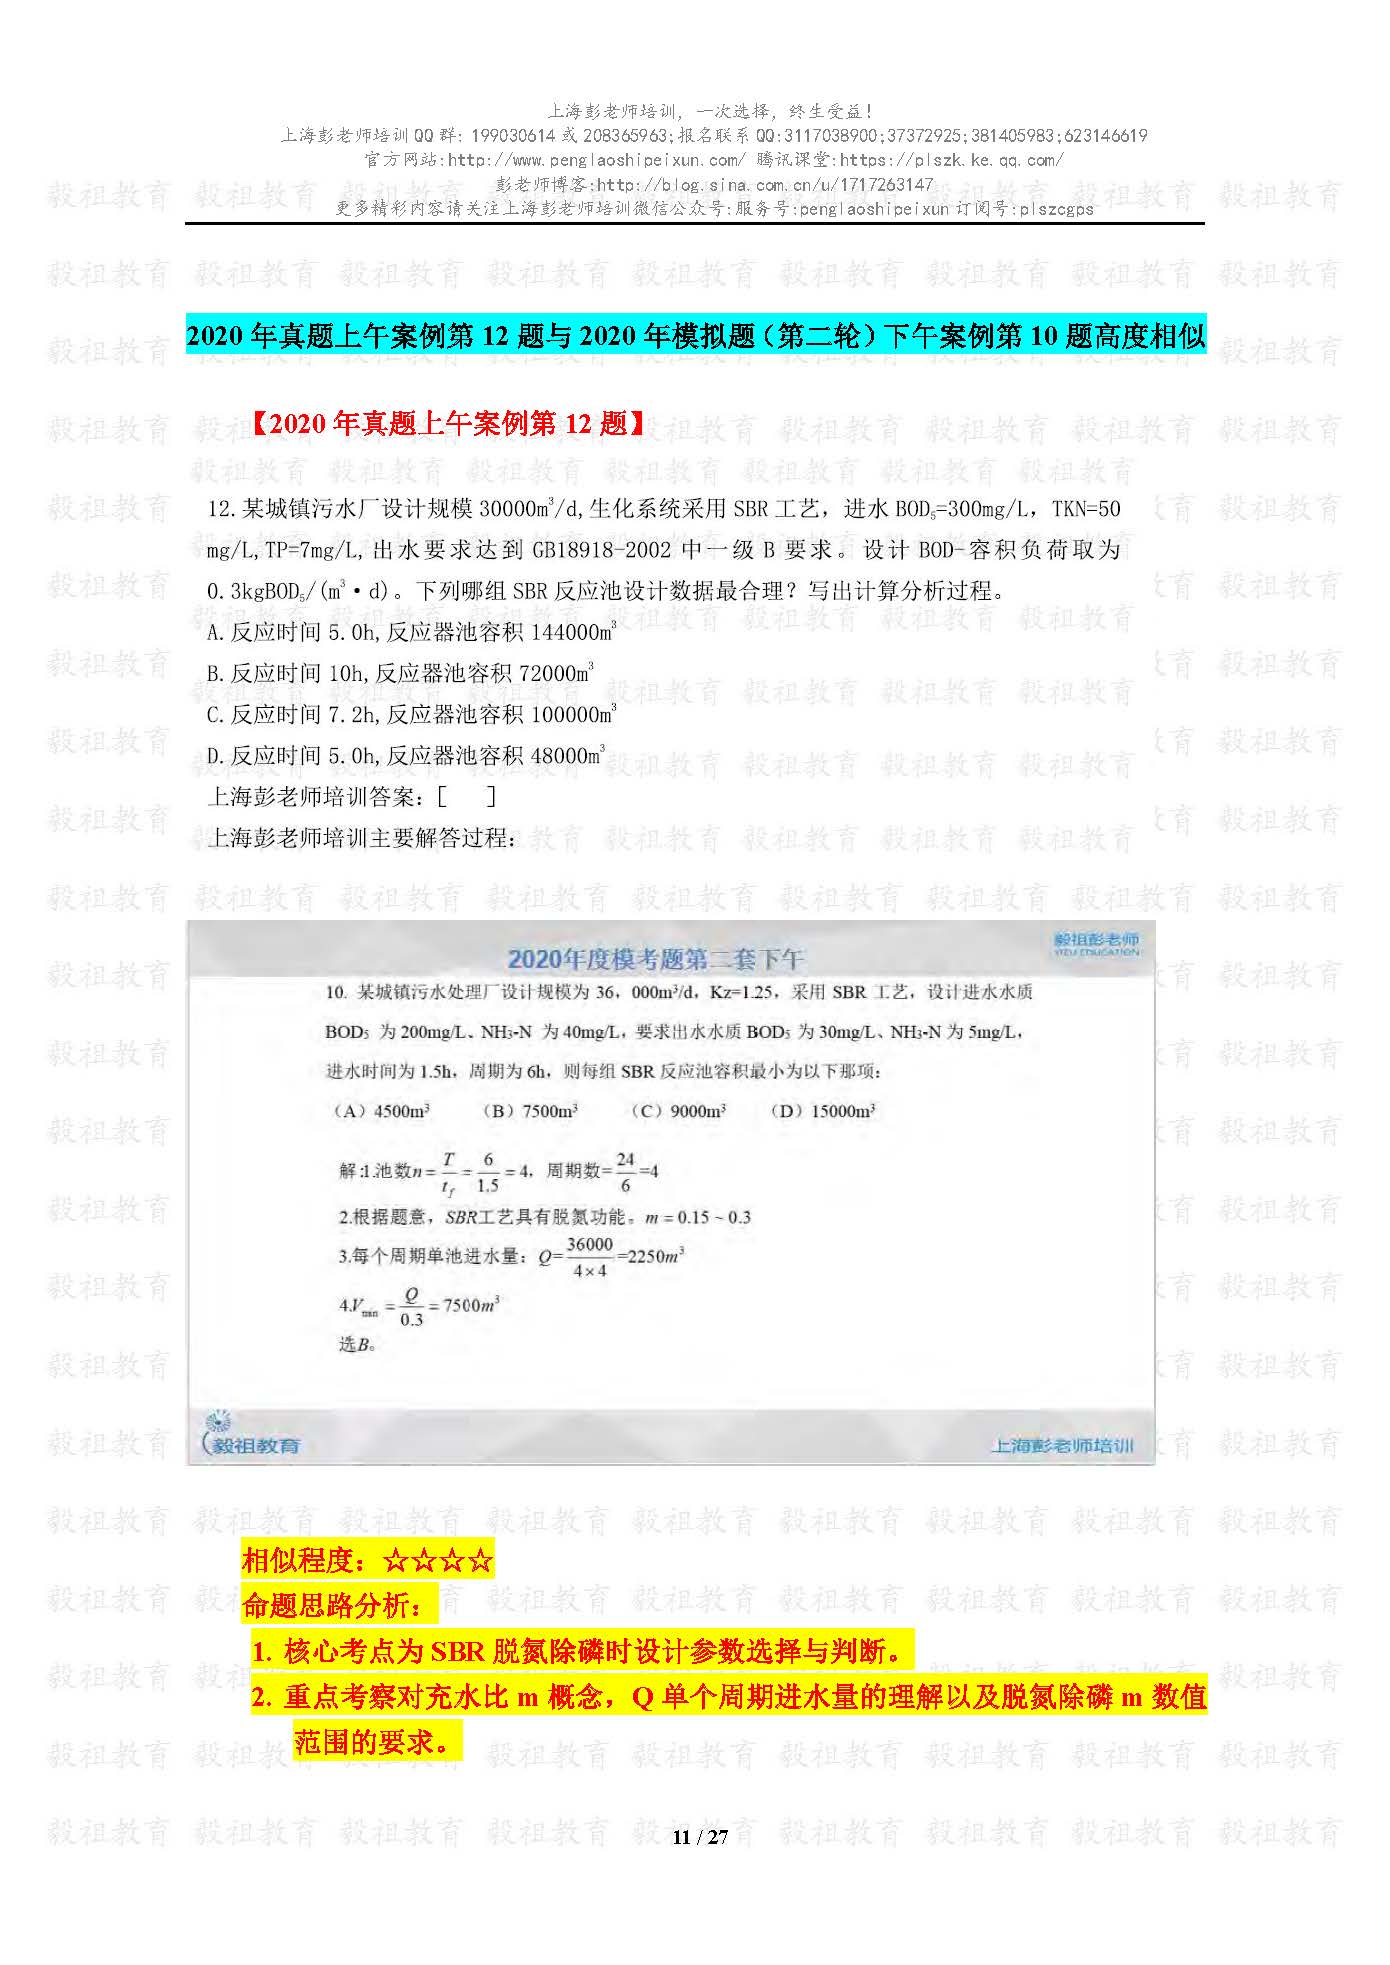 2020注册给排水考试真题与模考题相似度分析-上海彭老师培训_页面_11.jpg.jpg